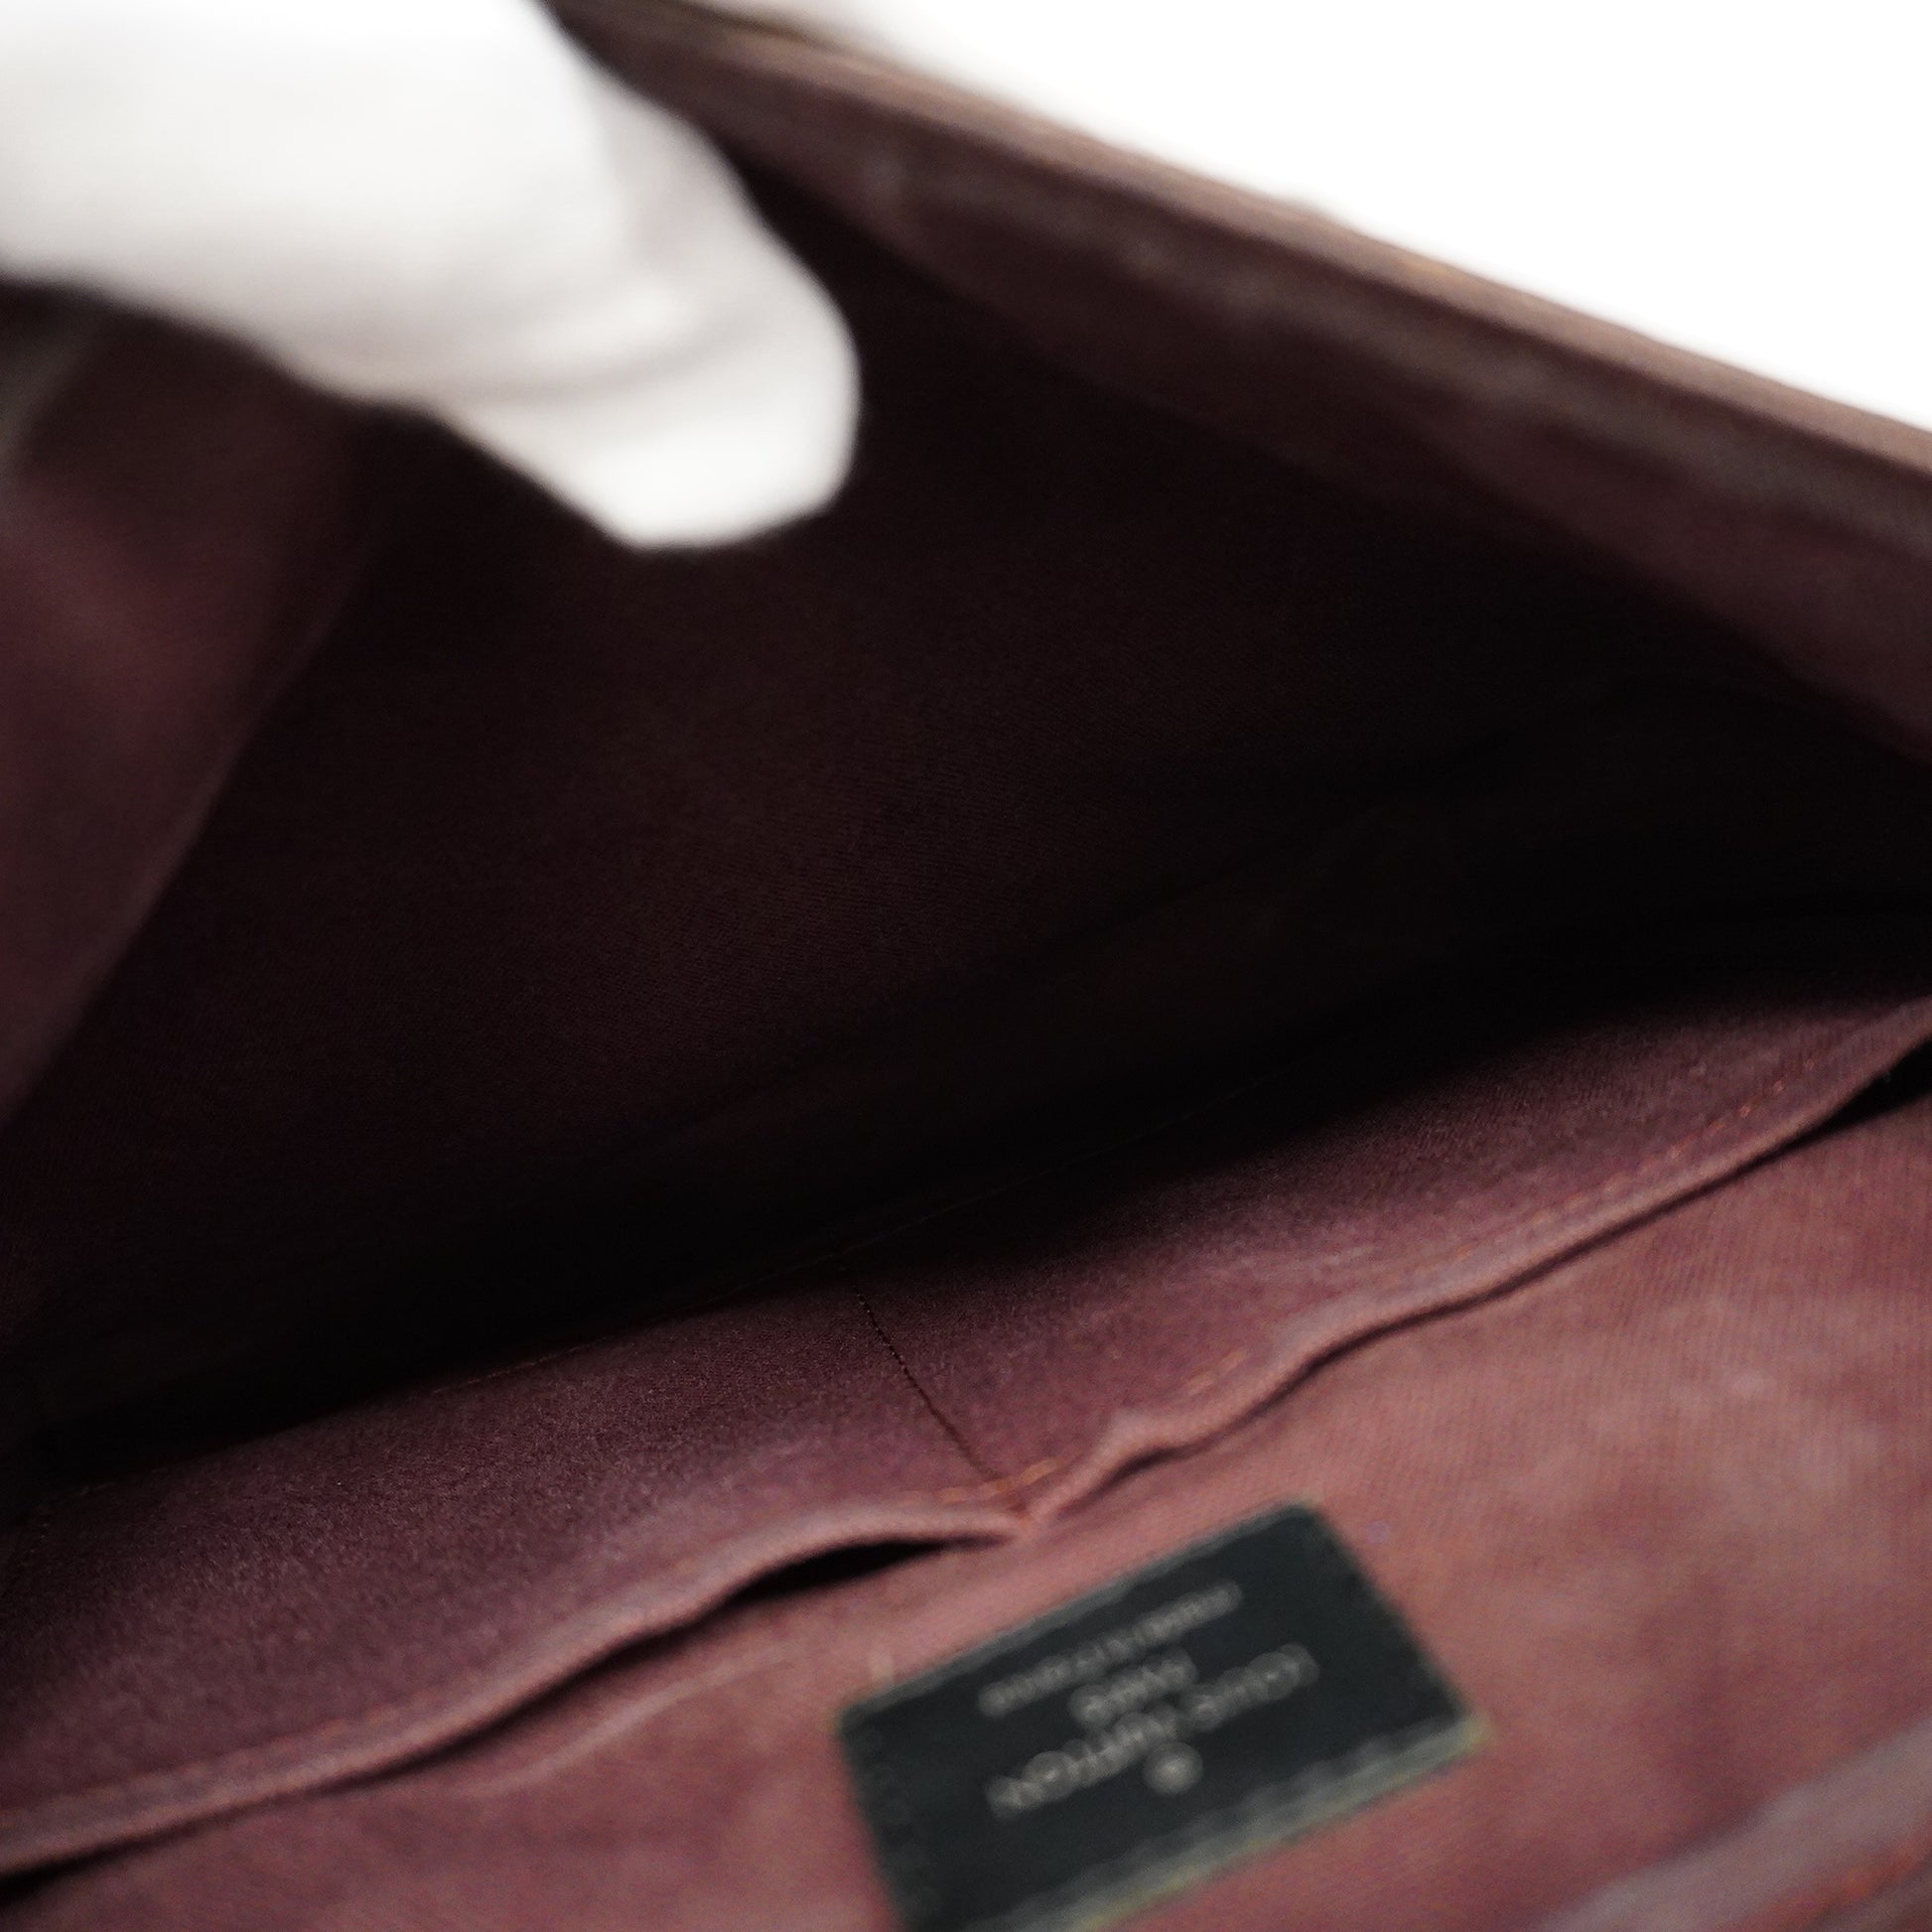 Louis Vuitton Monogram Macassar District PM M40935 Women's Shoulder Bag